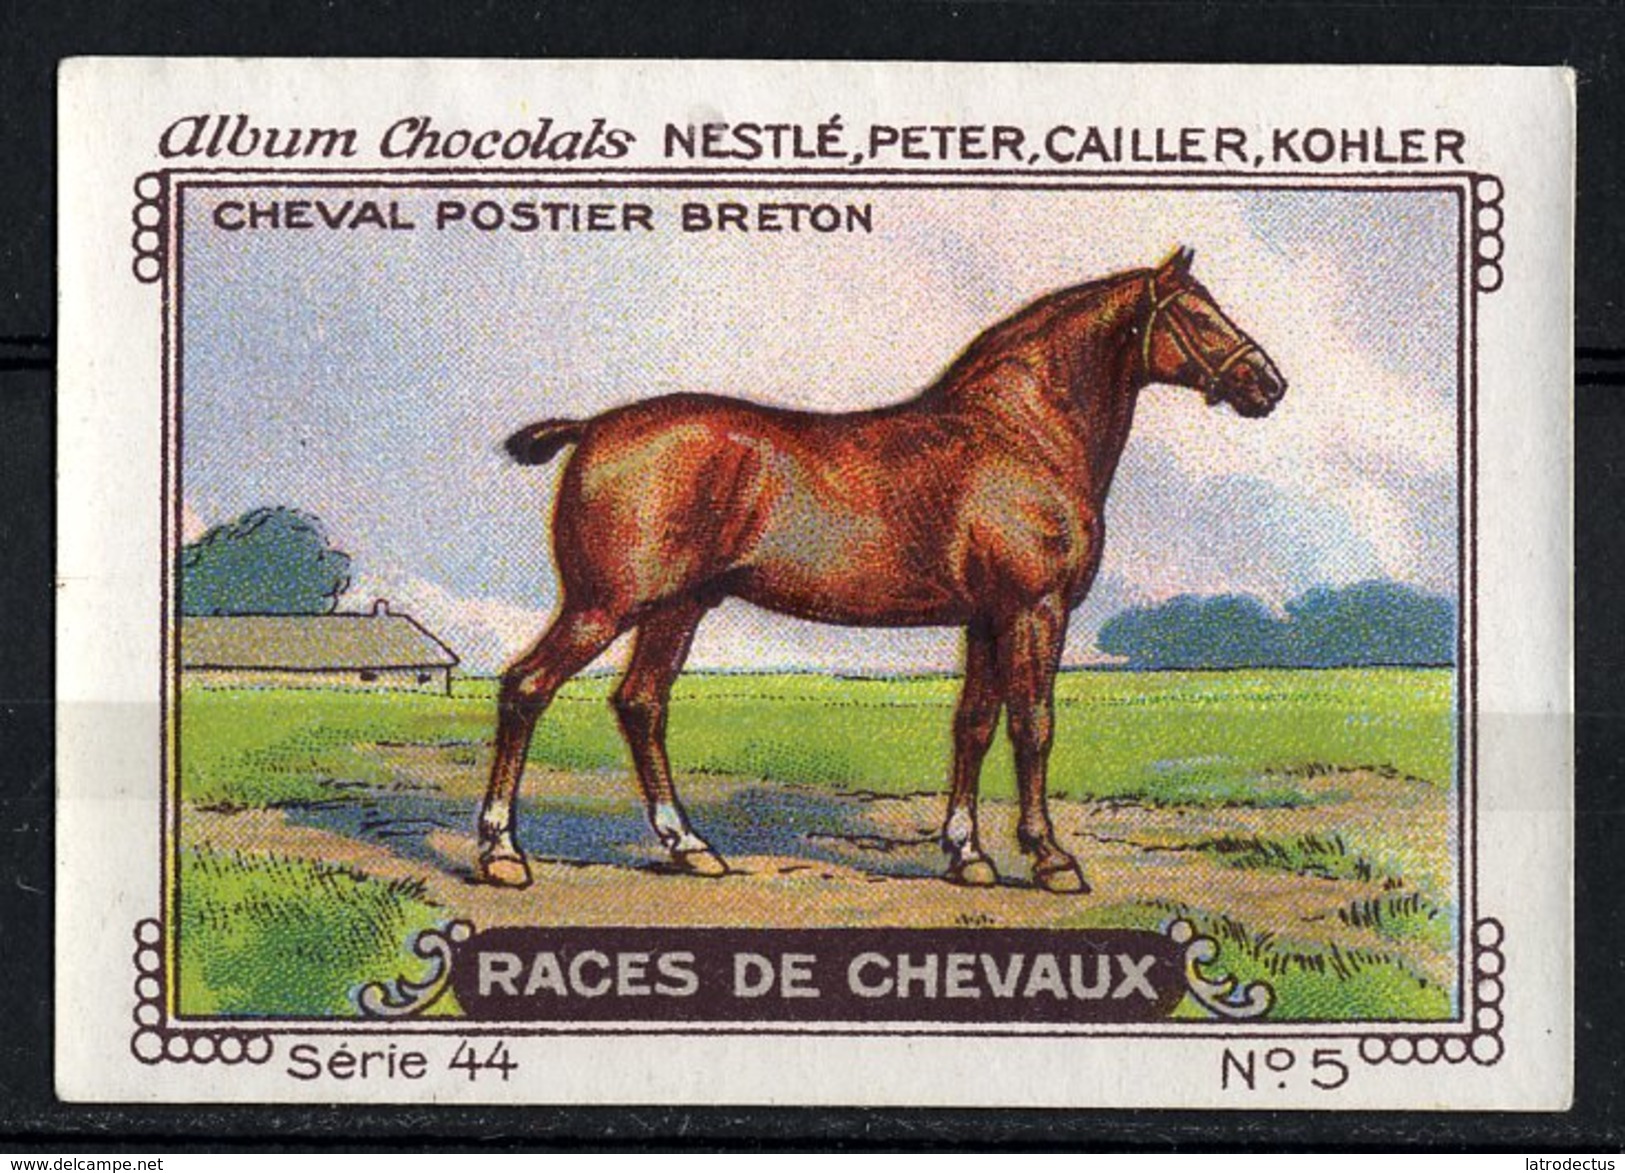 Nestlé - 44 - Races De Chevaux, Horses - 5 - Cheval Postier Breton - Nestlé